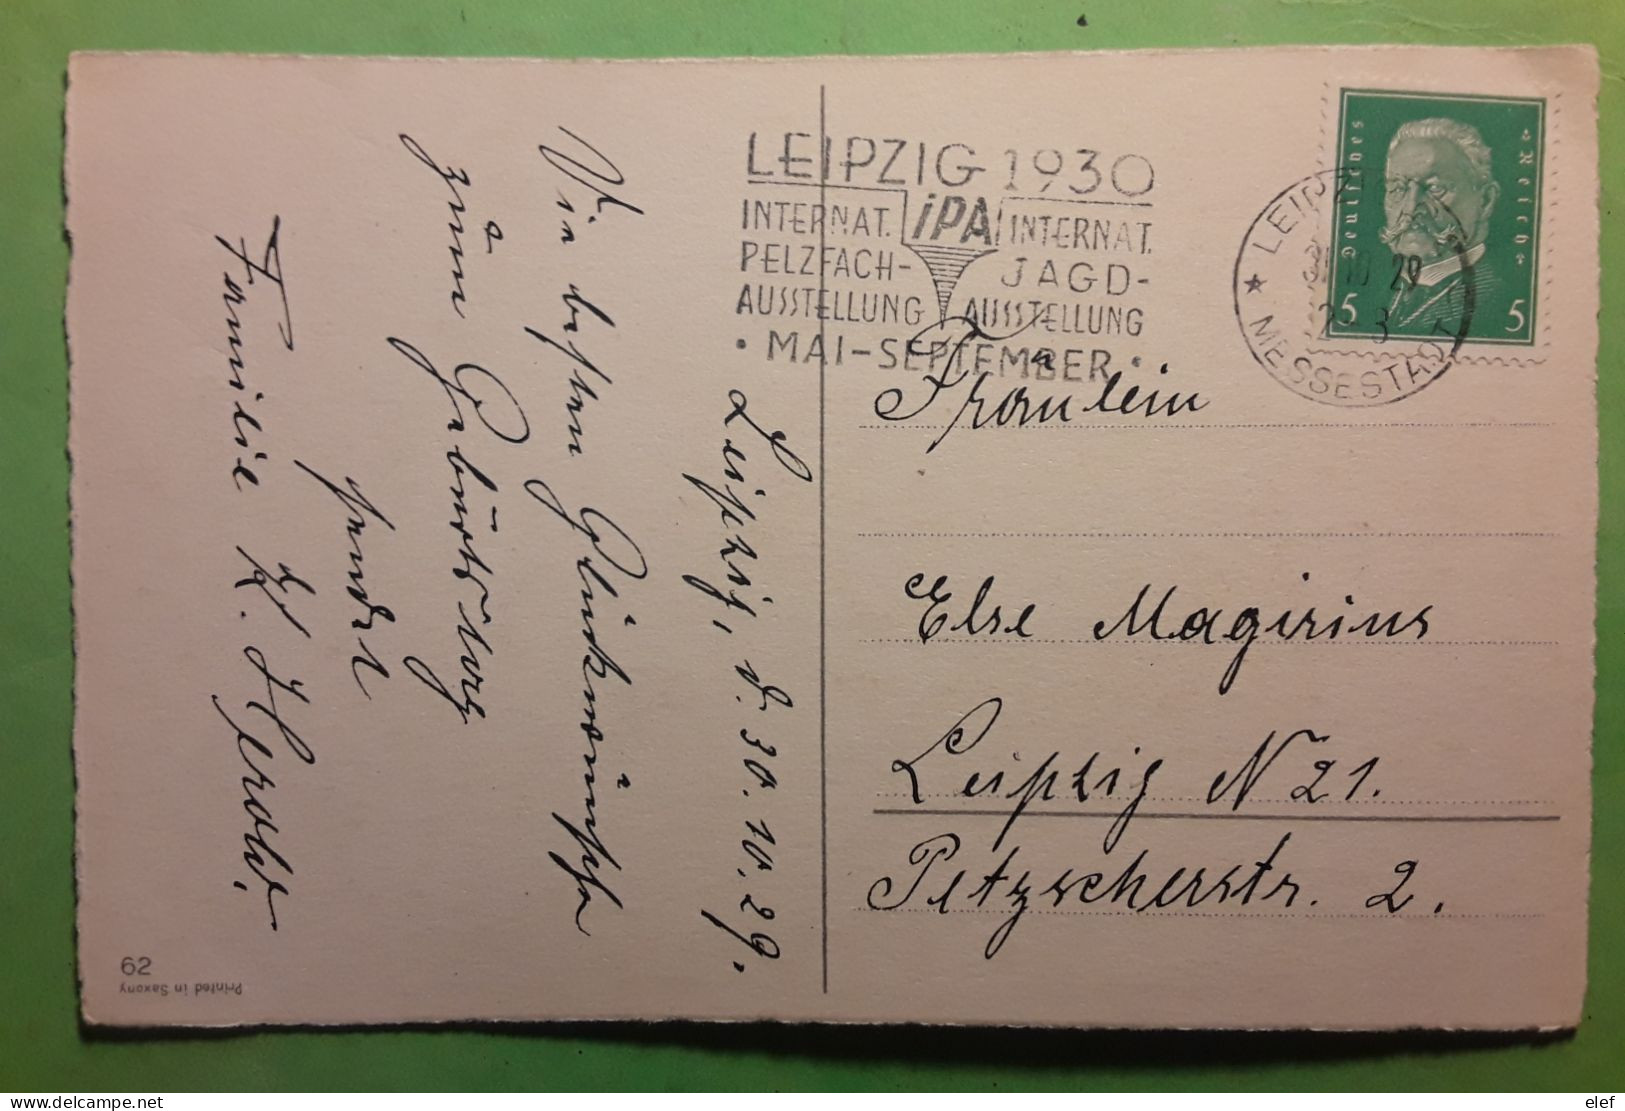 Flamme Chasse   IPA Internat PELZFACH JAGD AUSTELLUNG LEIPZIG 1930,Deutsches Reich Postkarte Gluckwunsch Z Geburtstage - Tiro (armas)